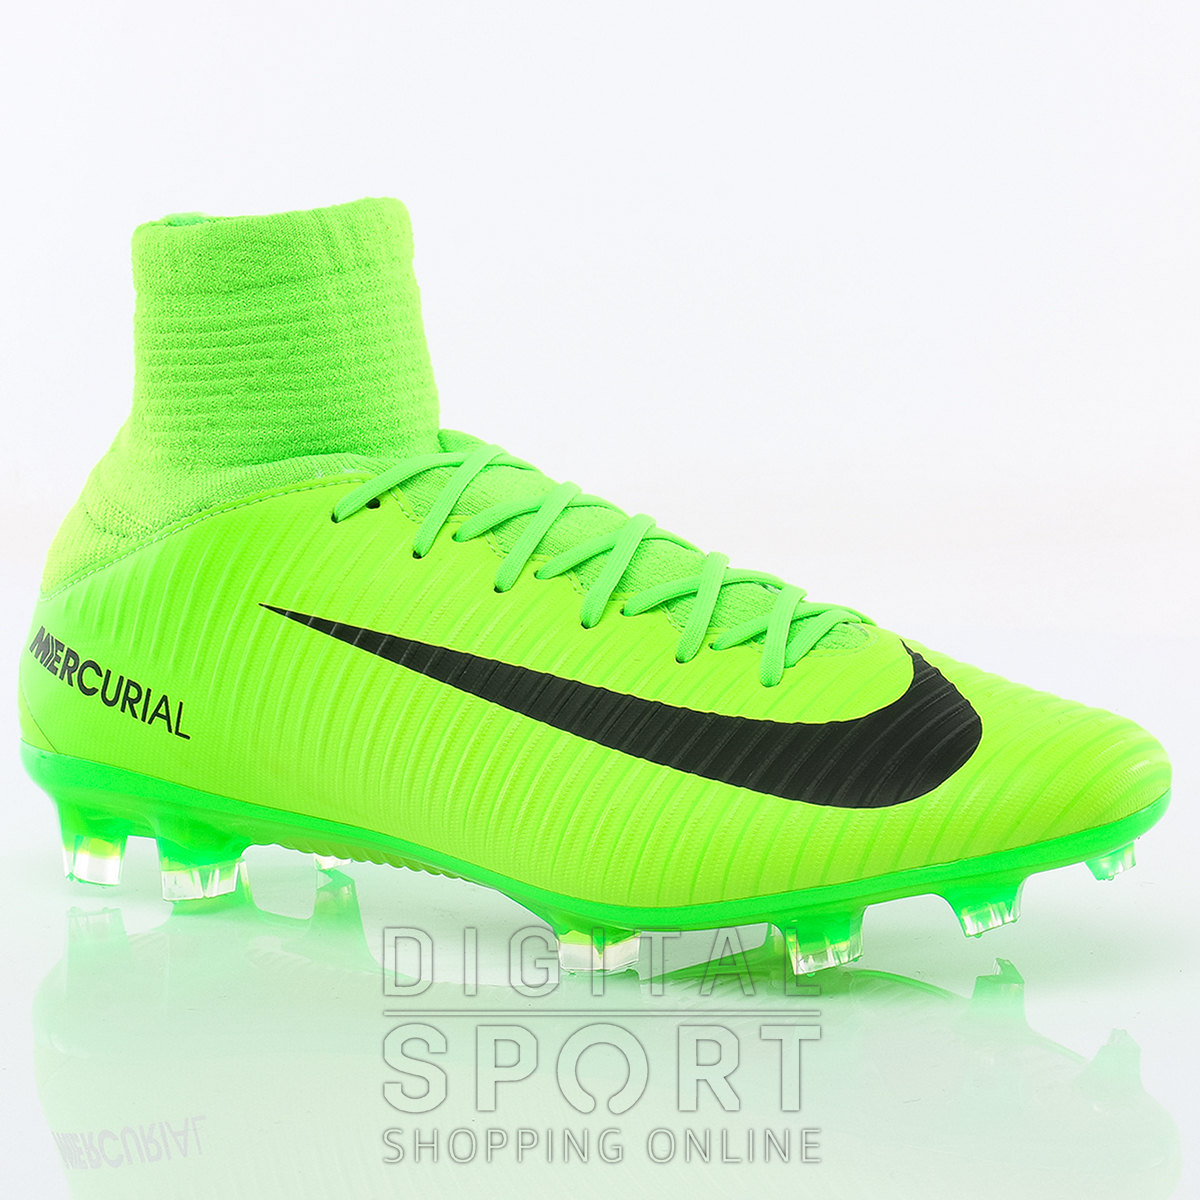 Botines Nike Mercurial Verde Fluor Slovakia, SAVE 35% - askromapadaswami.com